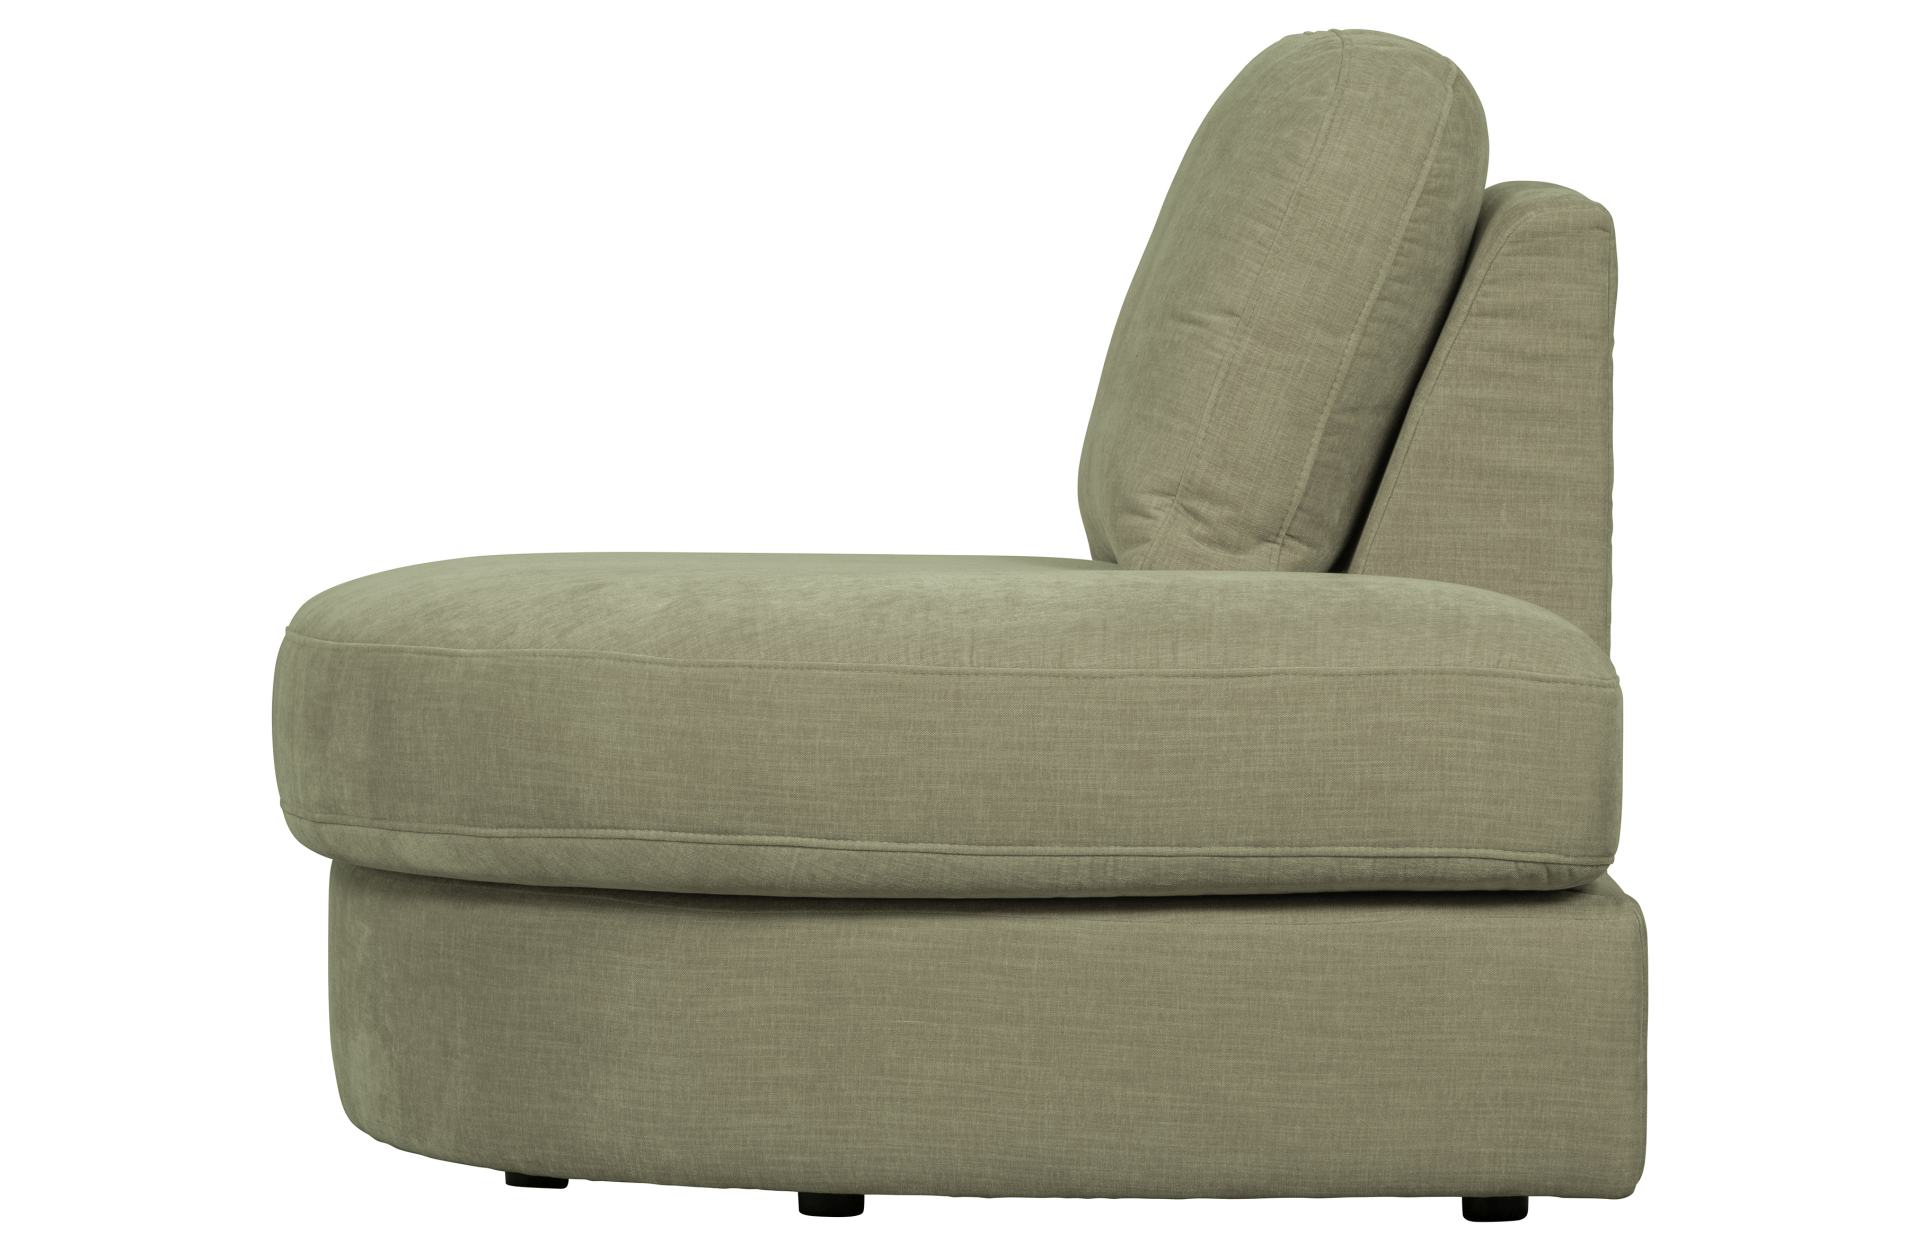 Das Modulsofa Family überzeugt mit seinem modernen Design. Das 1-Seat Eck Element mit der Ausführung Rechts wurde aus Gewebe-Stoff gefertigt, welcher einen einen grünen Farbton besitzen. Das Gestell ist aus Metall und hat eine schwarze Farbe. Das Element 